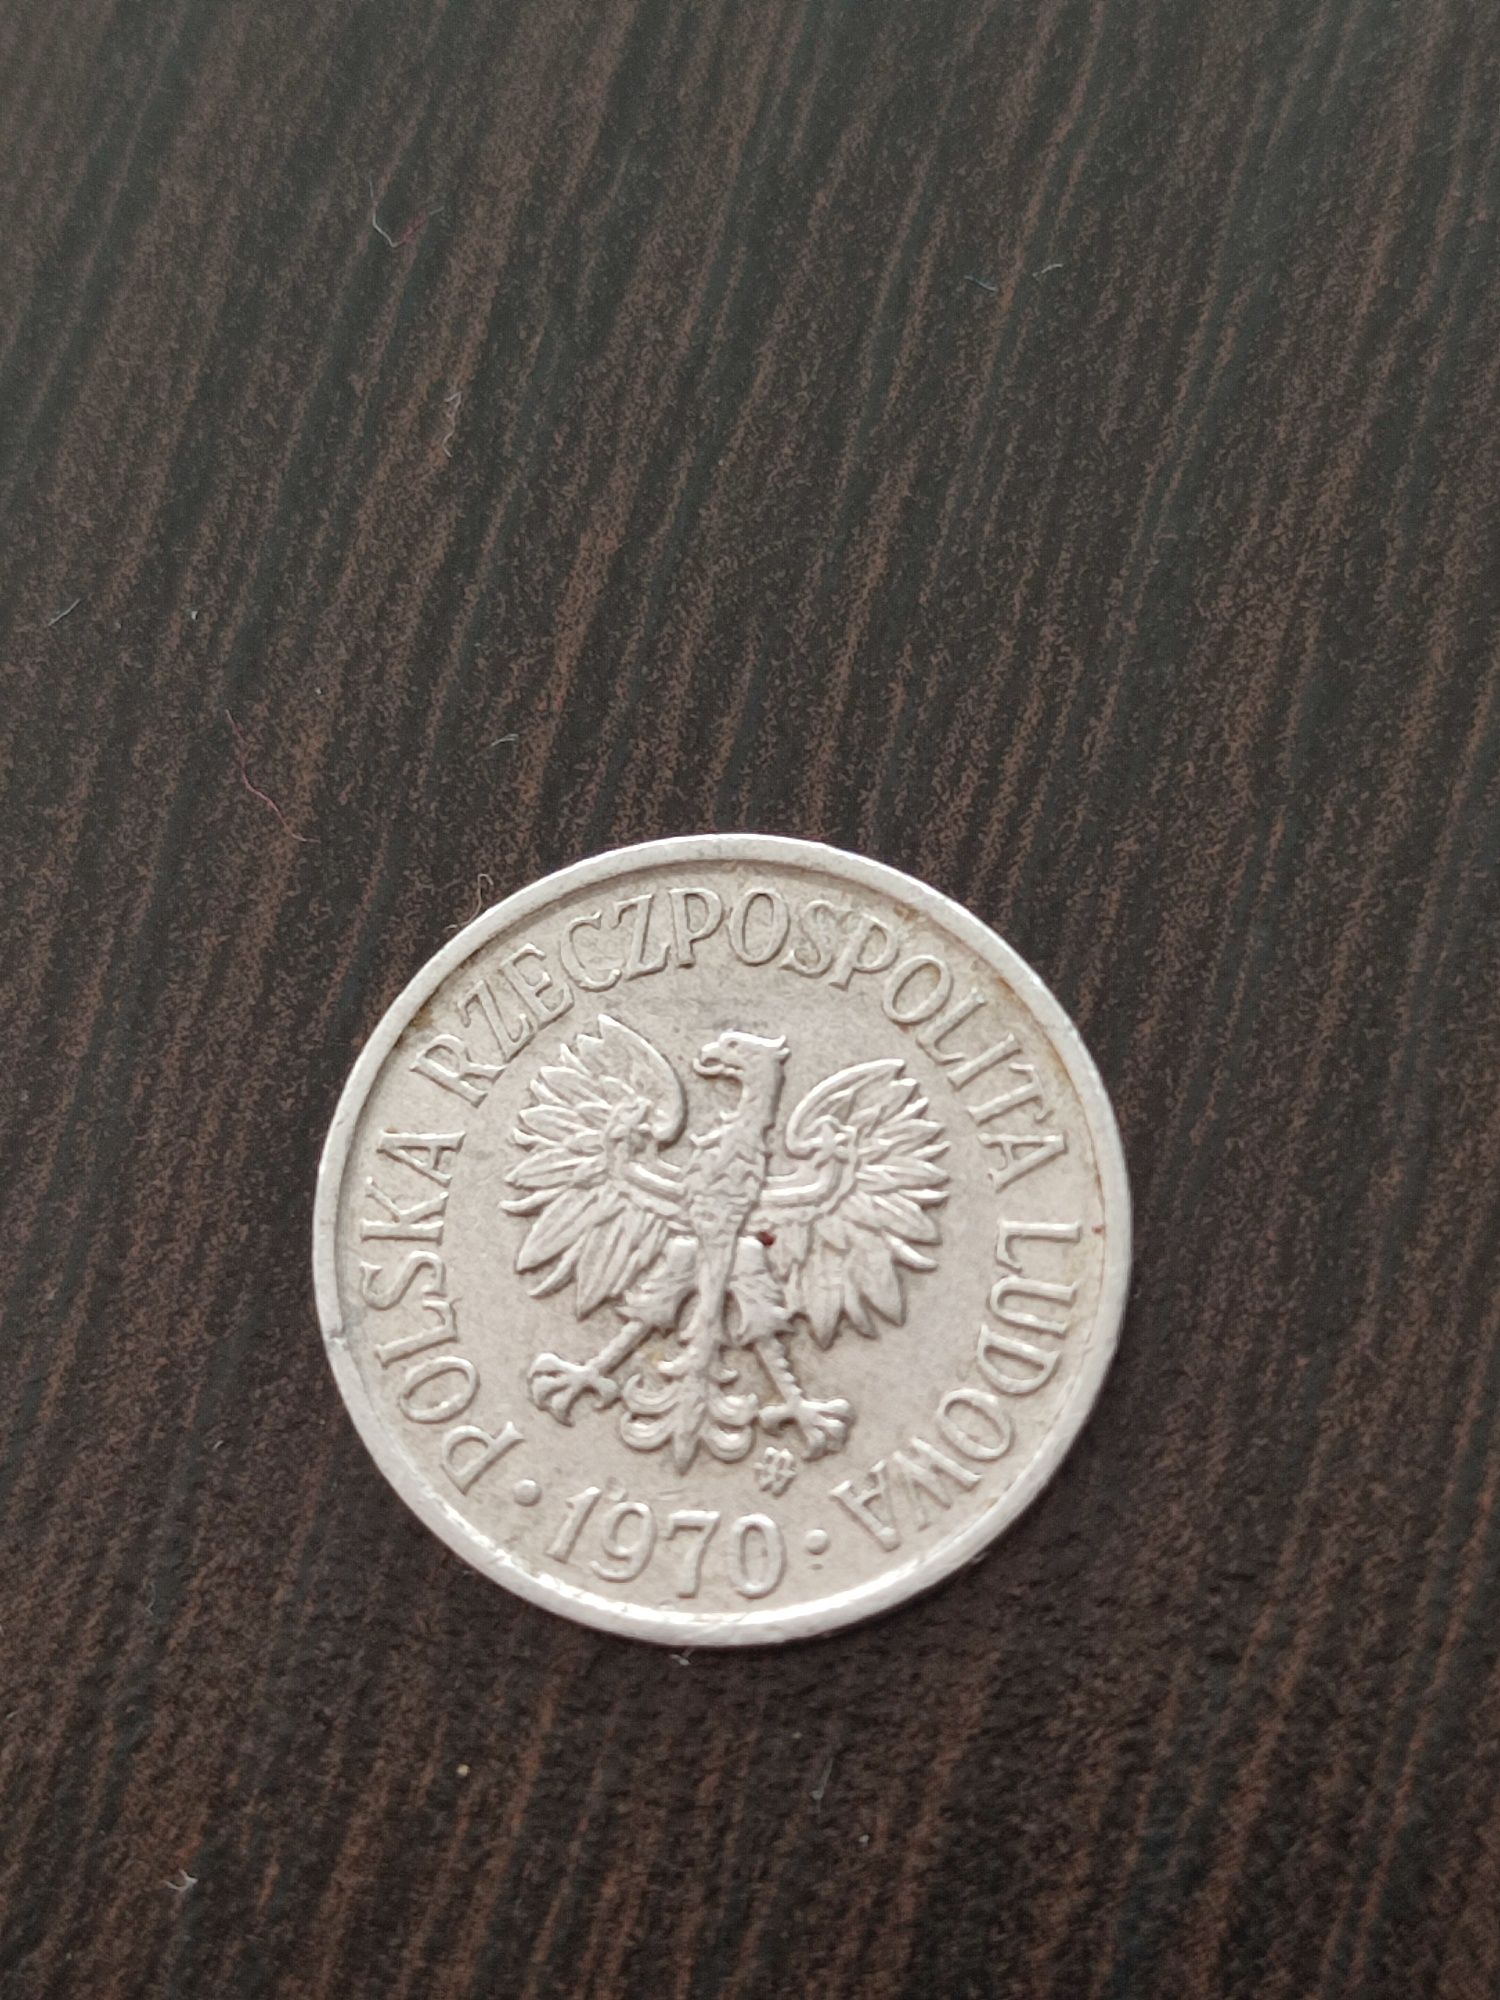 5 groszy 1970 Polska